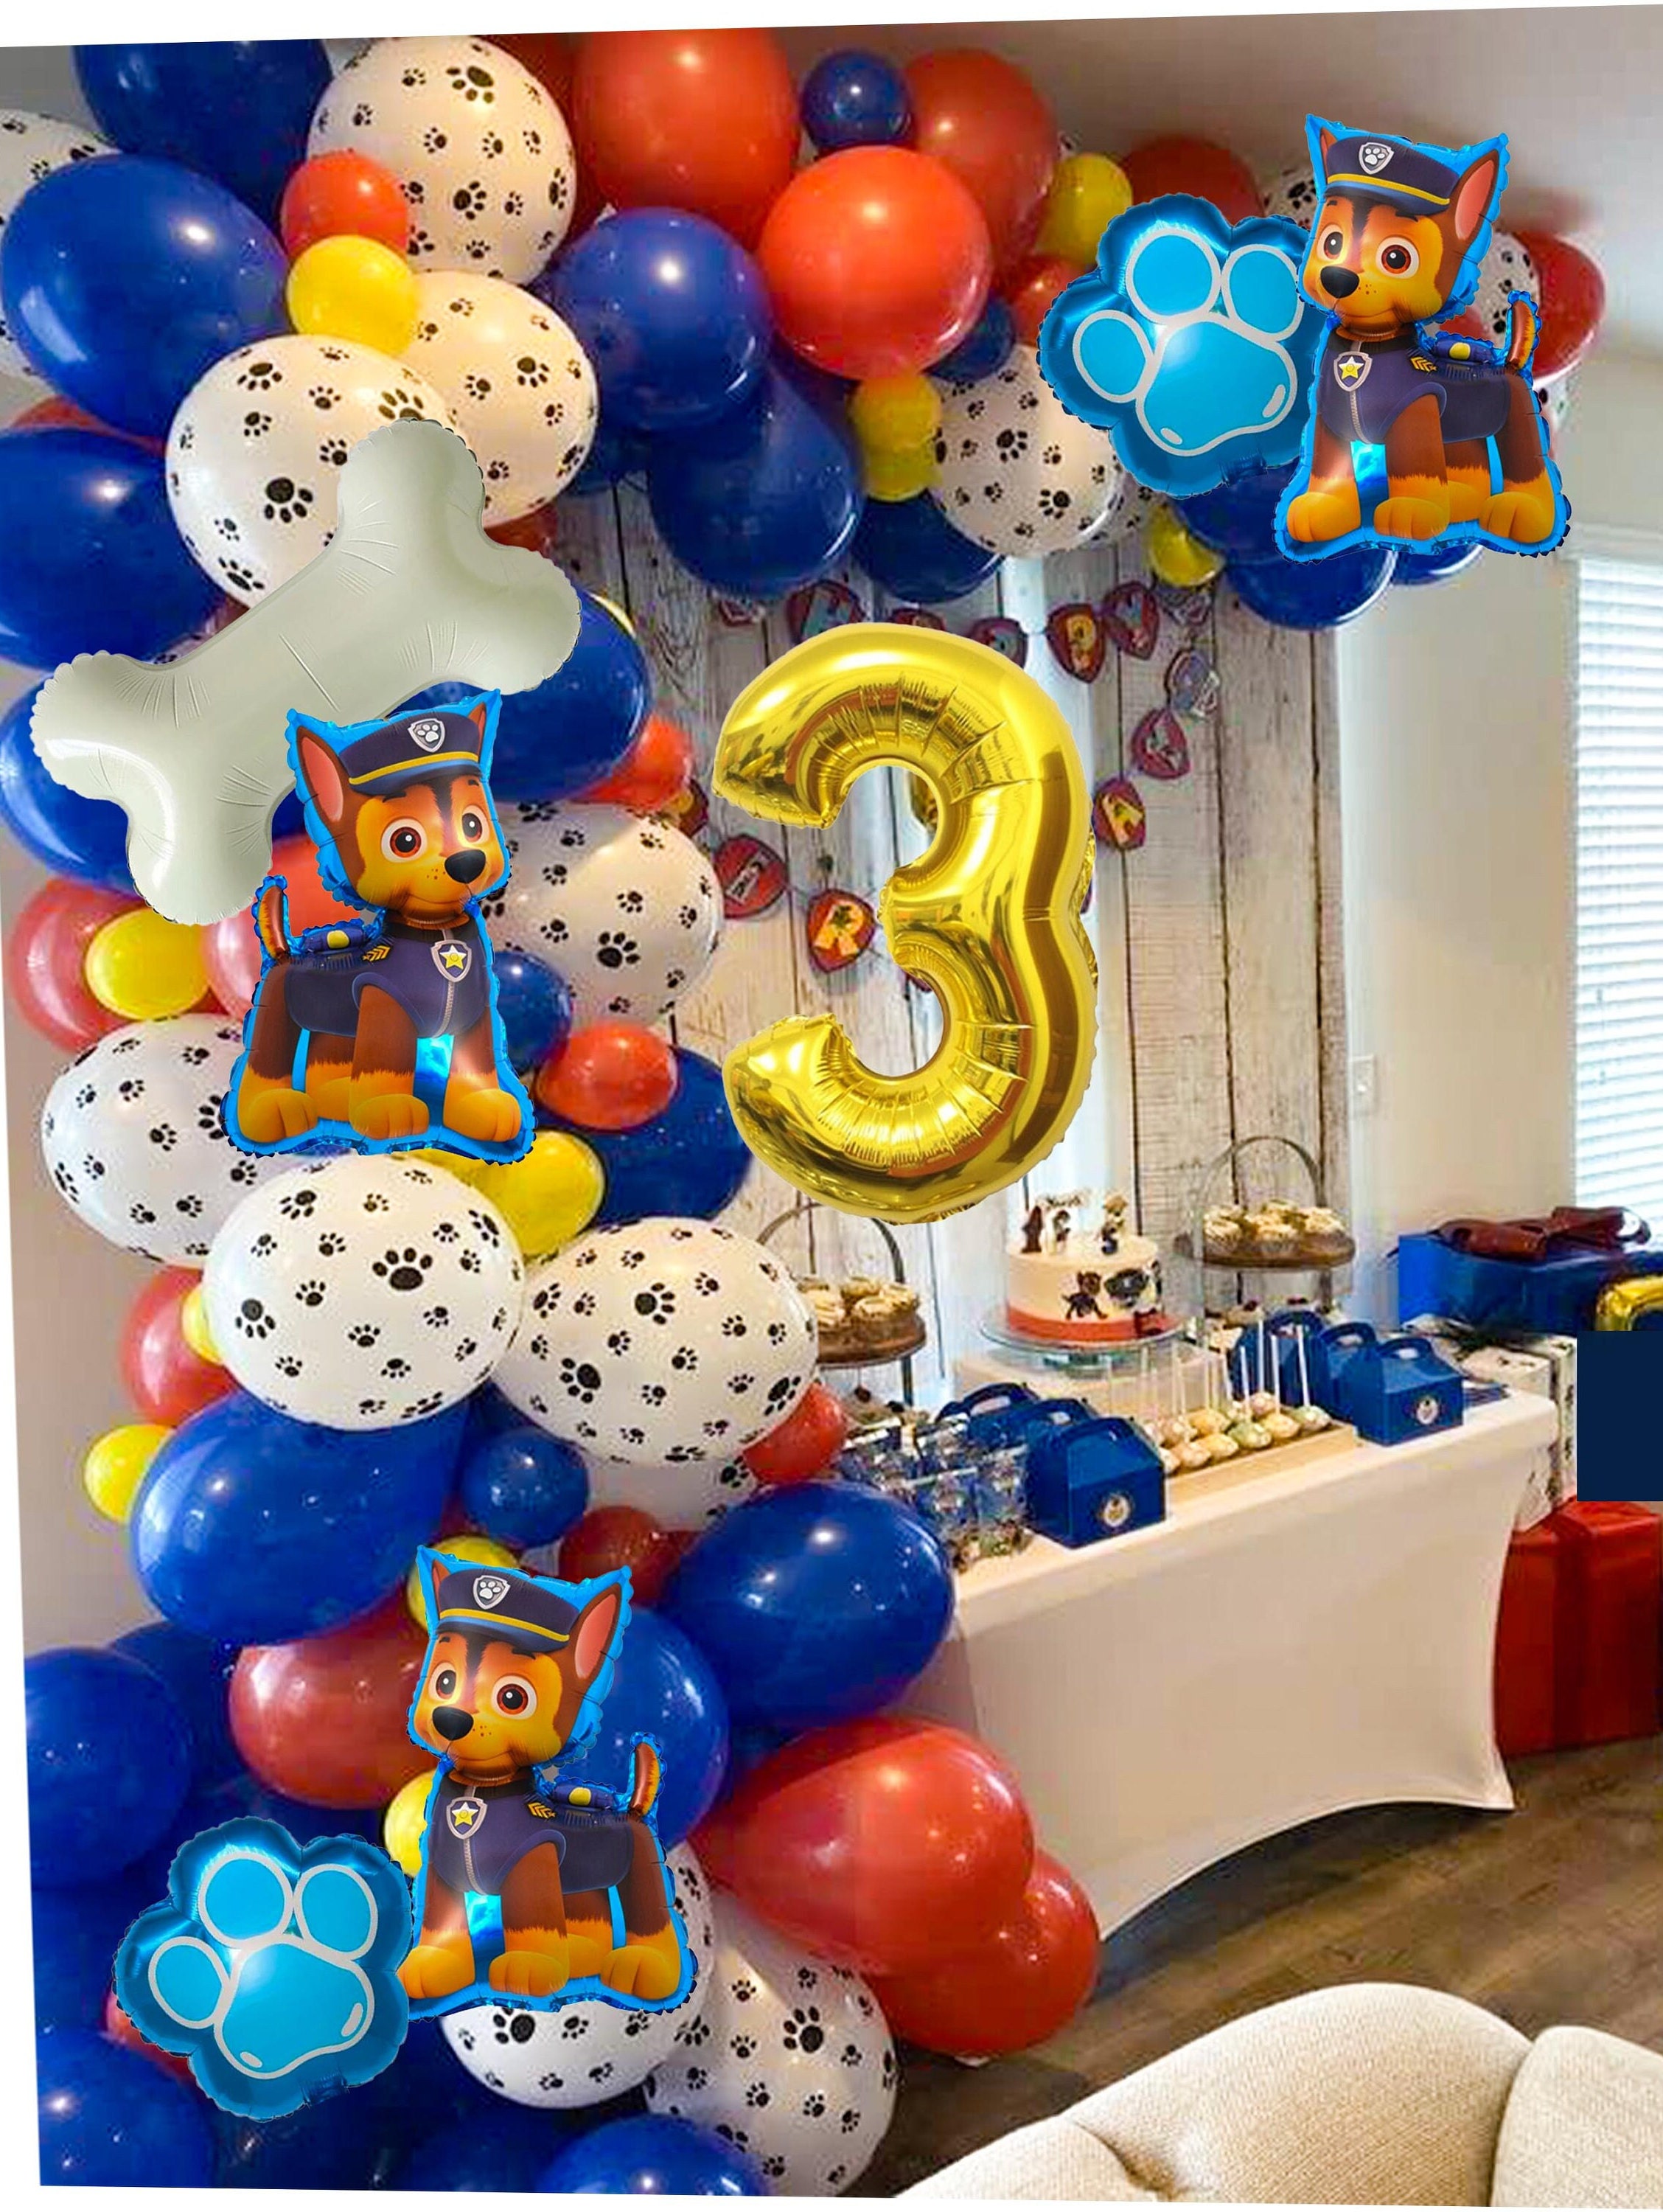 Decoración con globos patrulla canina/paw patrol balloons decoration 